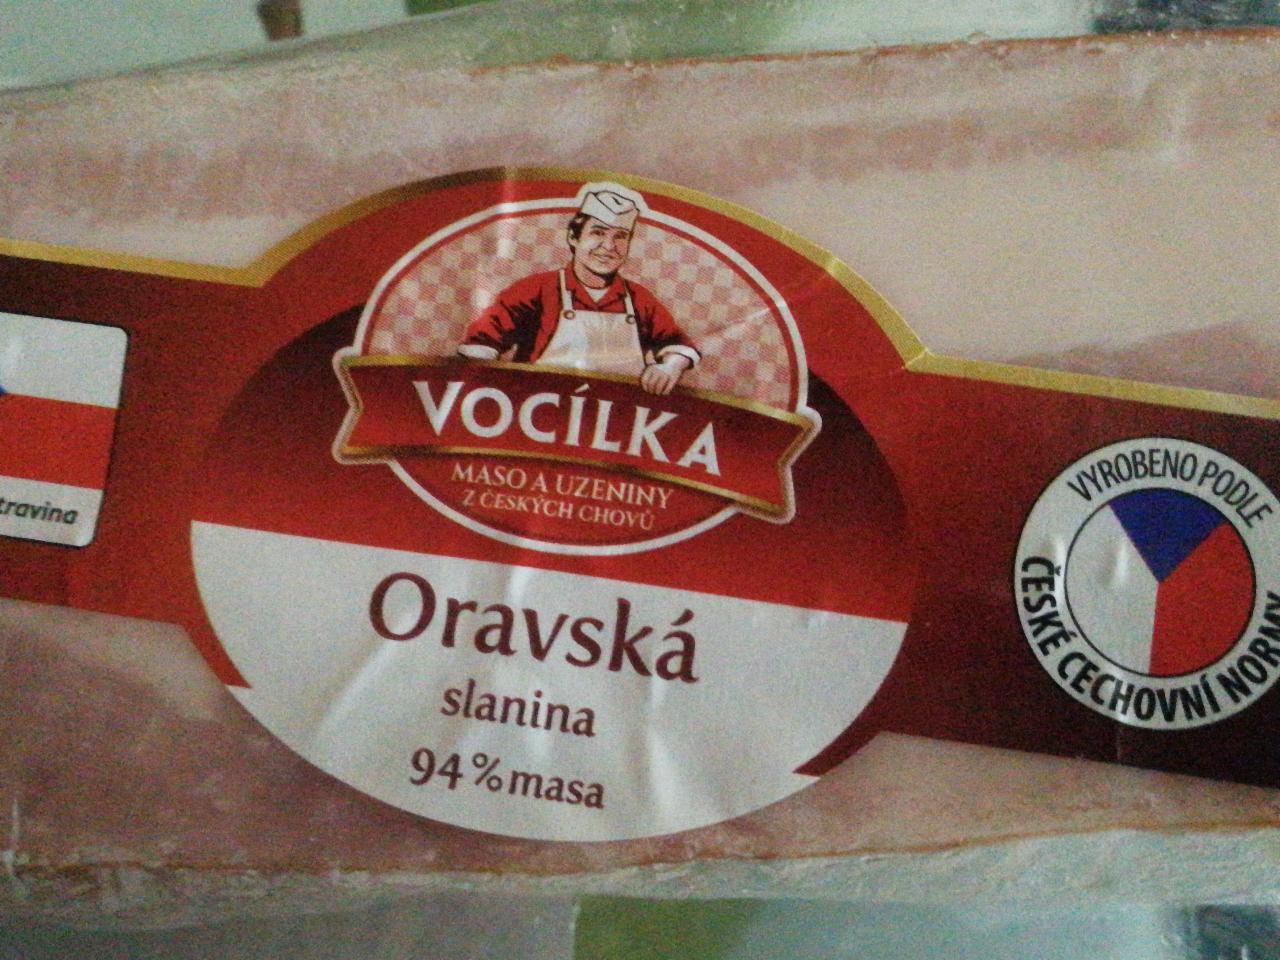 Fotografie - Oravská slanina 94% masa vcelku Vocílka